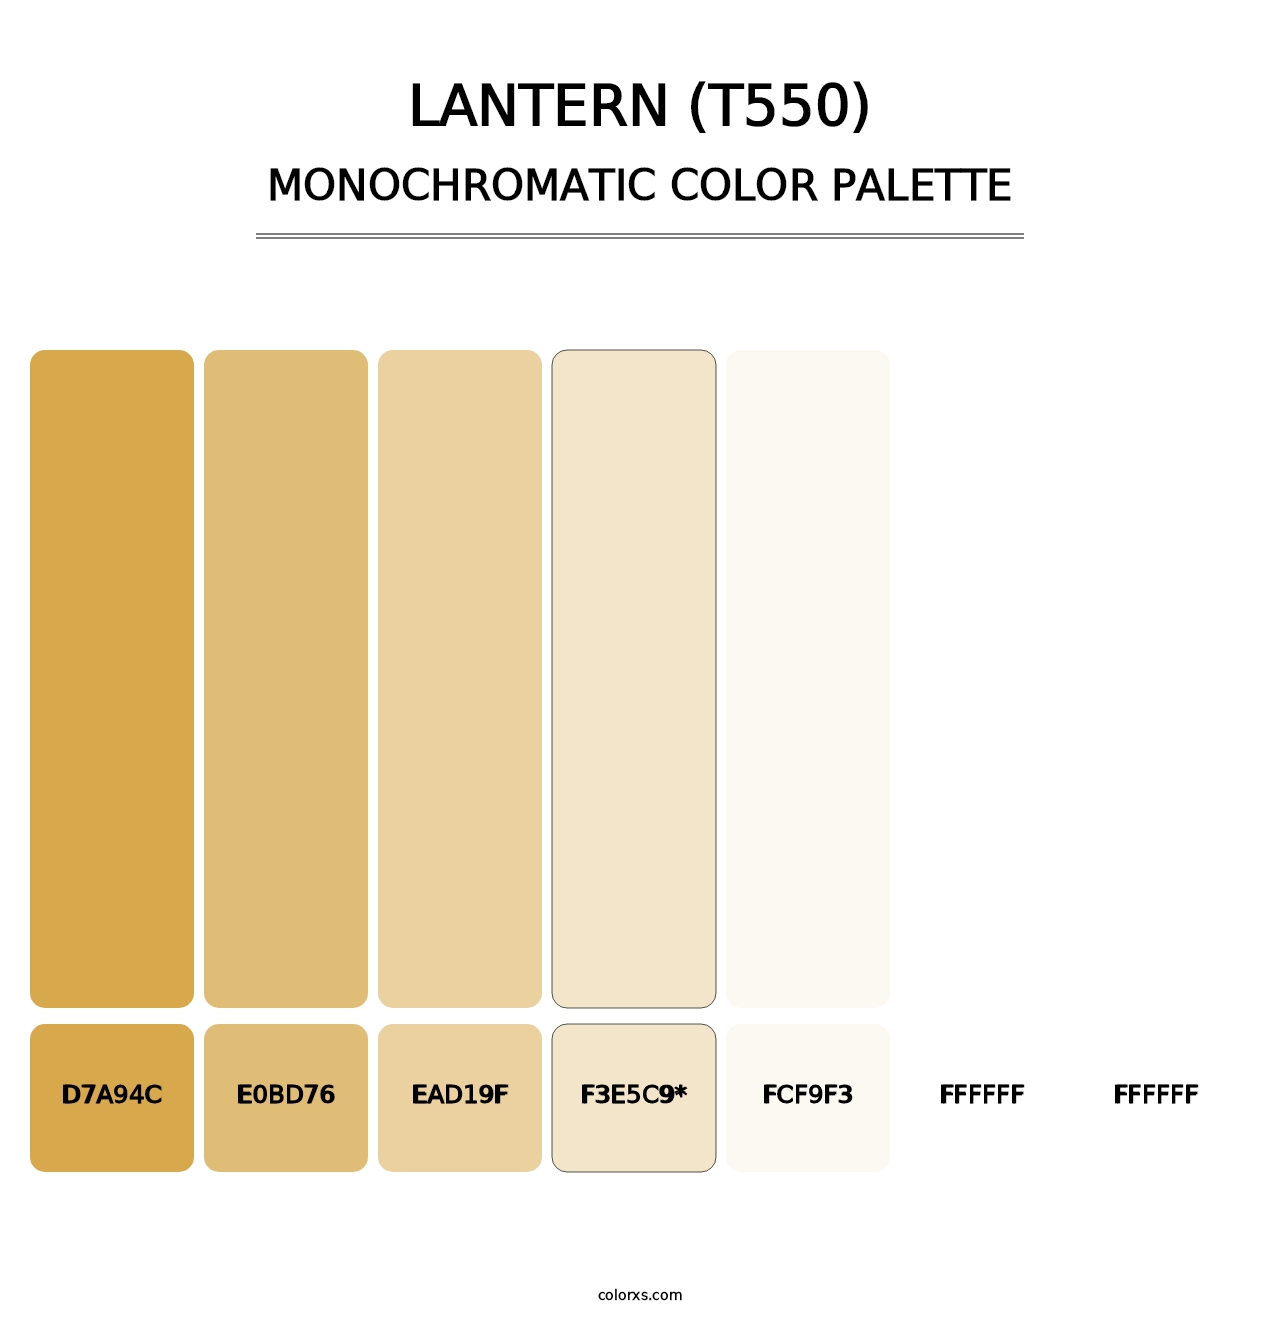 Lantern (T550) - Monochromatic Color Palette